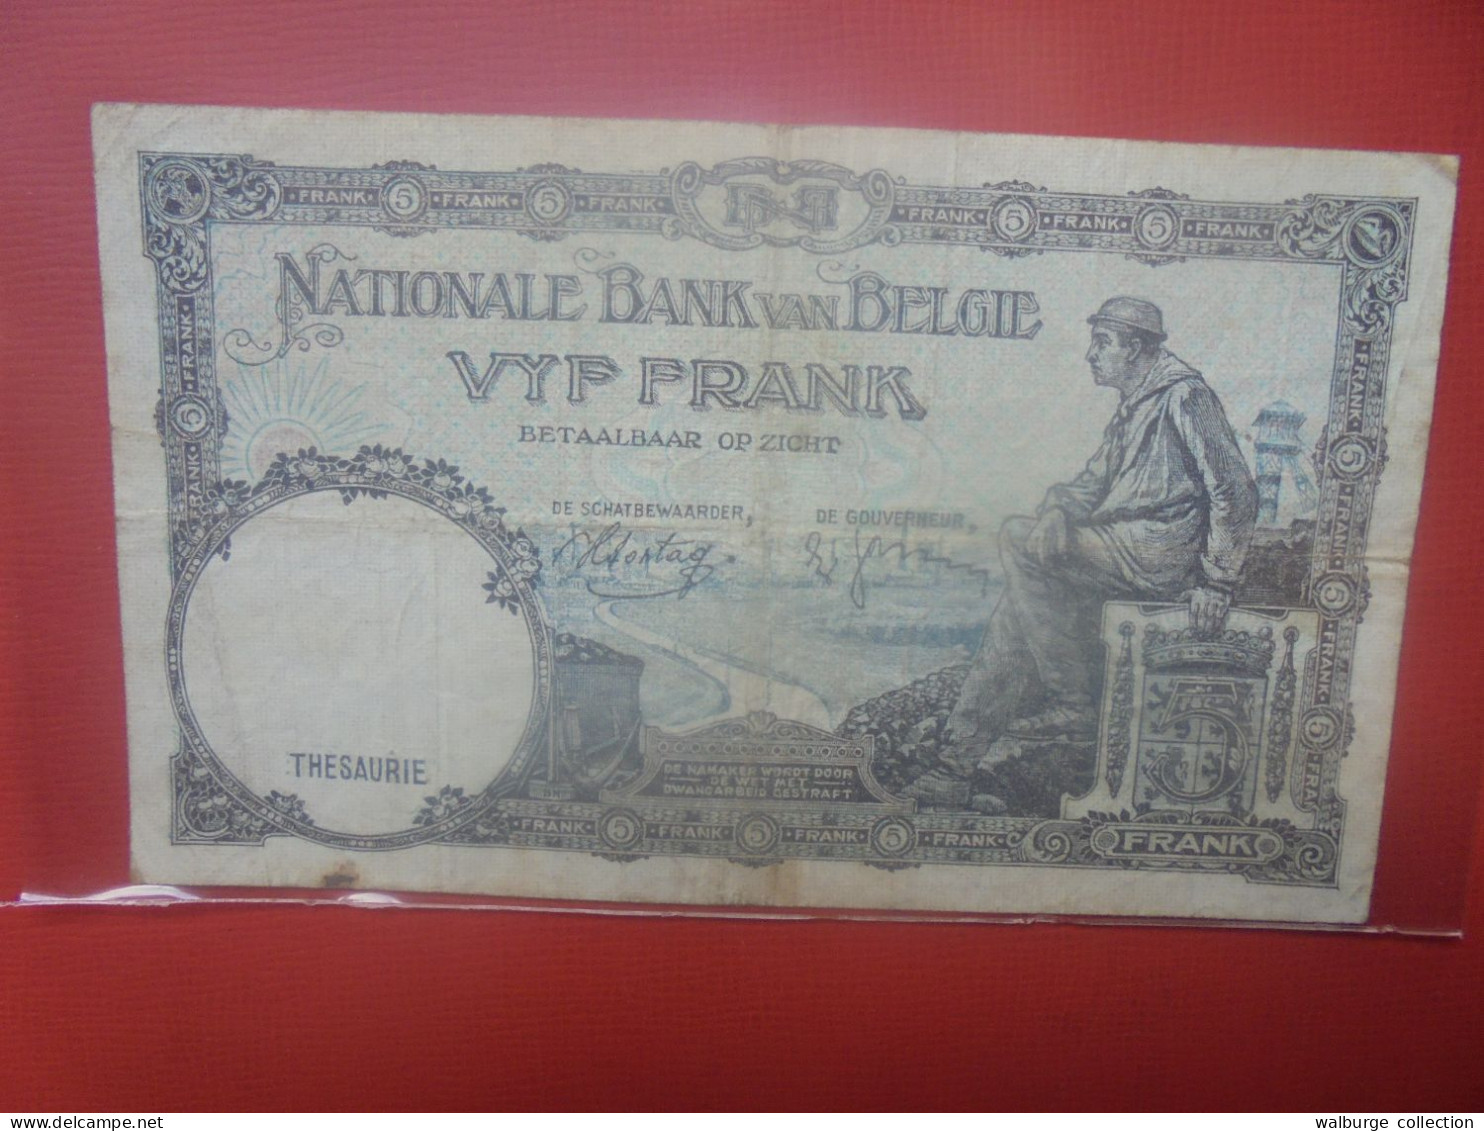 BELGIQUE 5 Francs 1938 Circuler (B.18) - 5 Franchi